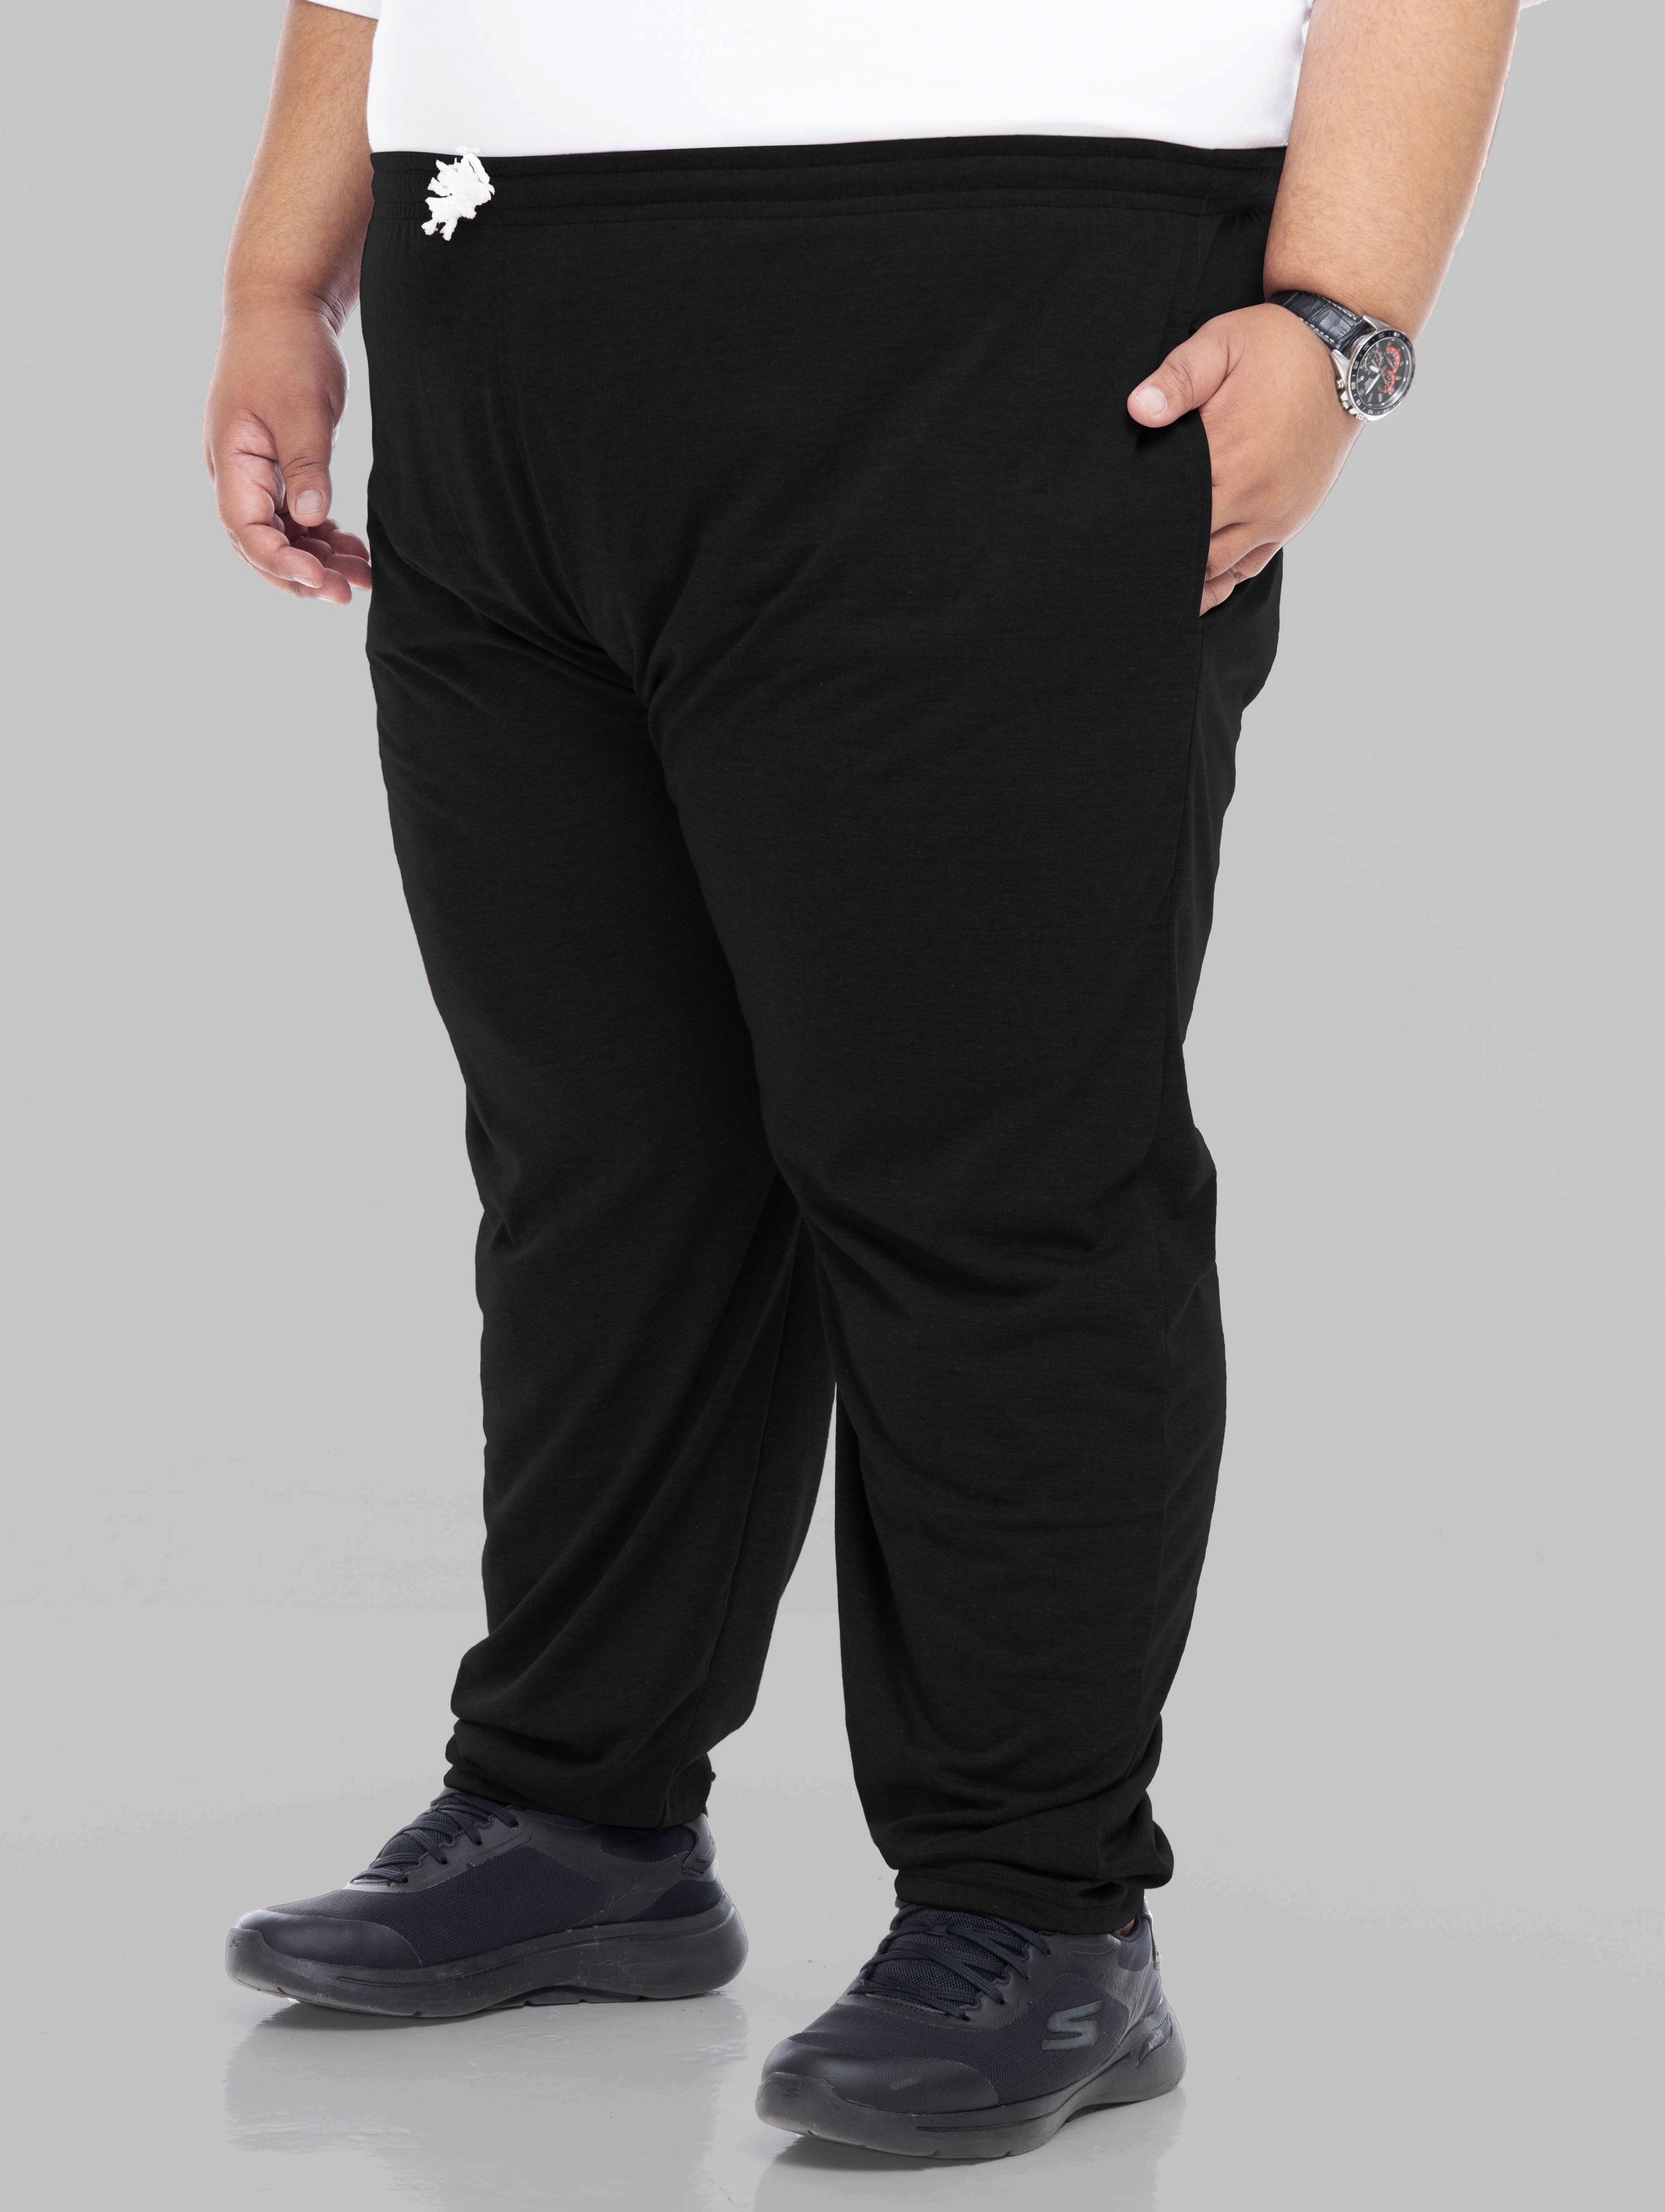 Plus Size Pants | Plus Size Sweatpants | Men Big Pants #color_black